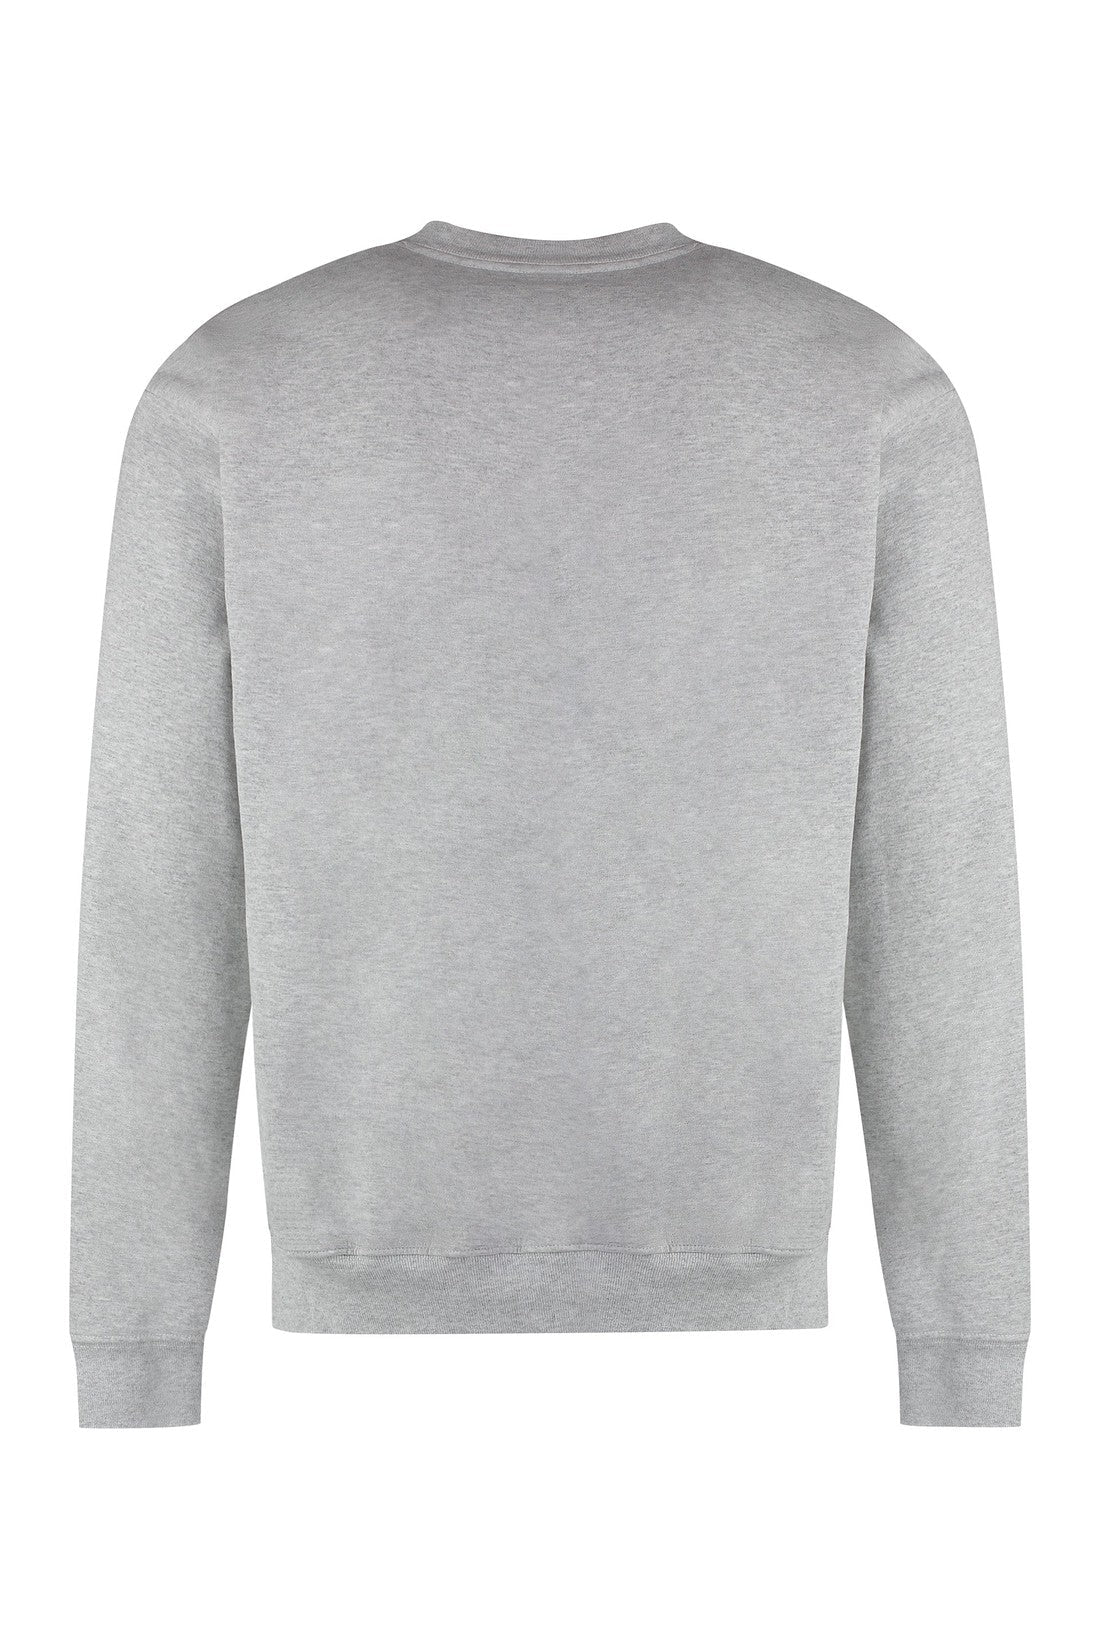 Sporty & Rich-OUTLET-SALE-Cotton crew-neck sweatshirt-ARCHIVIST